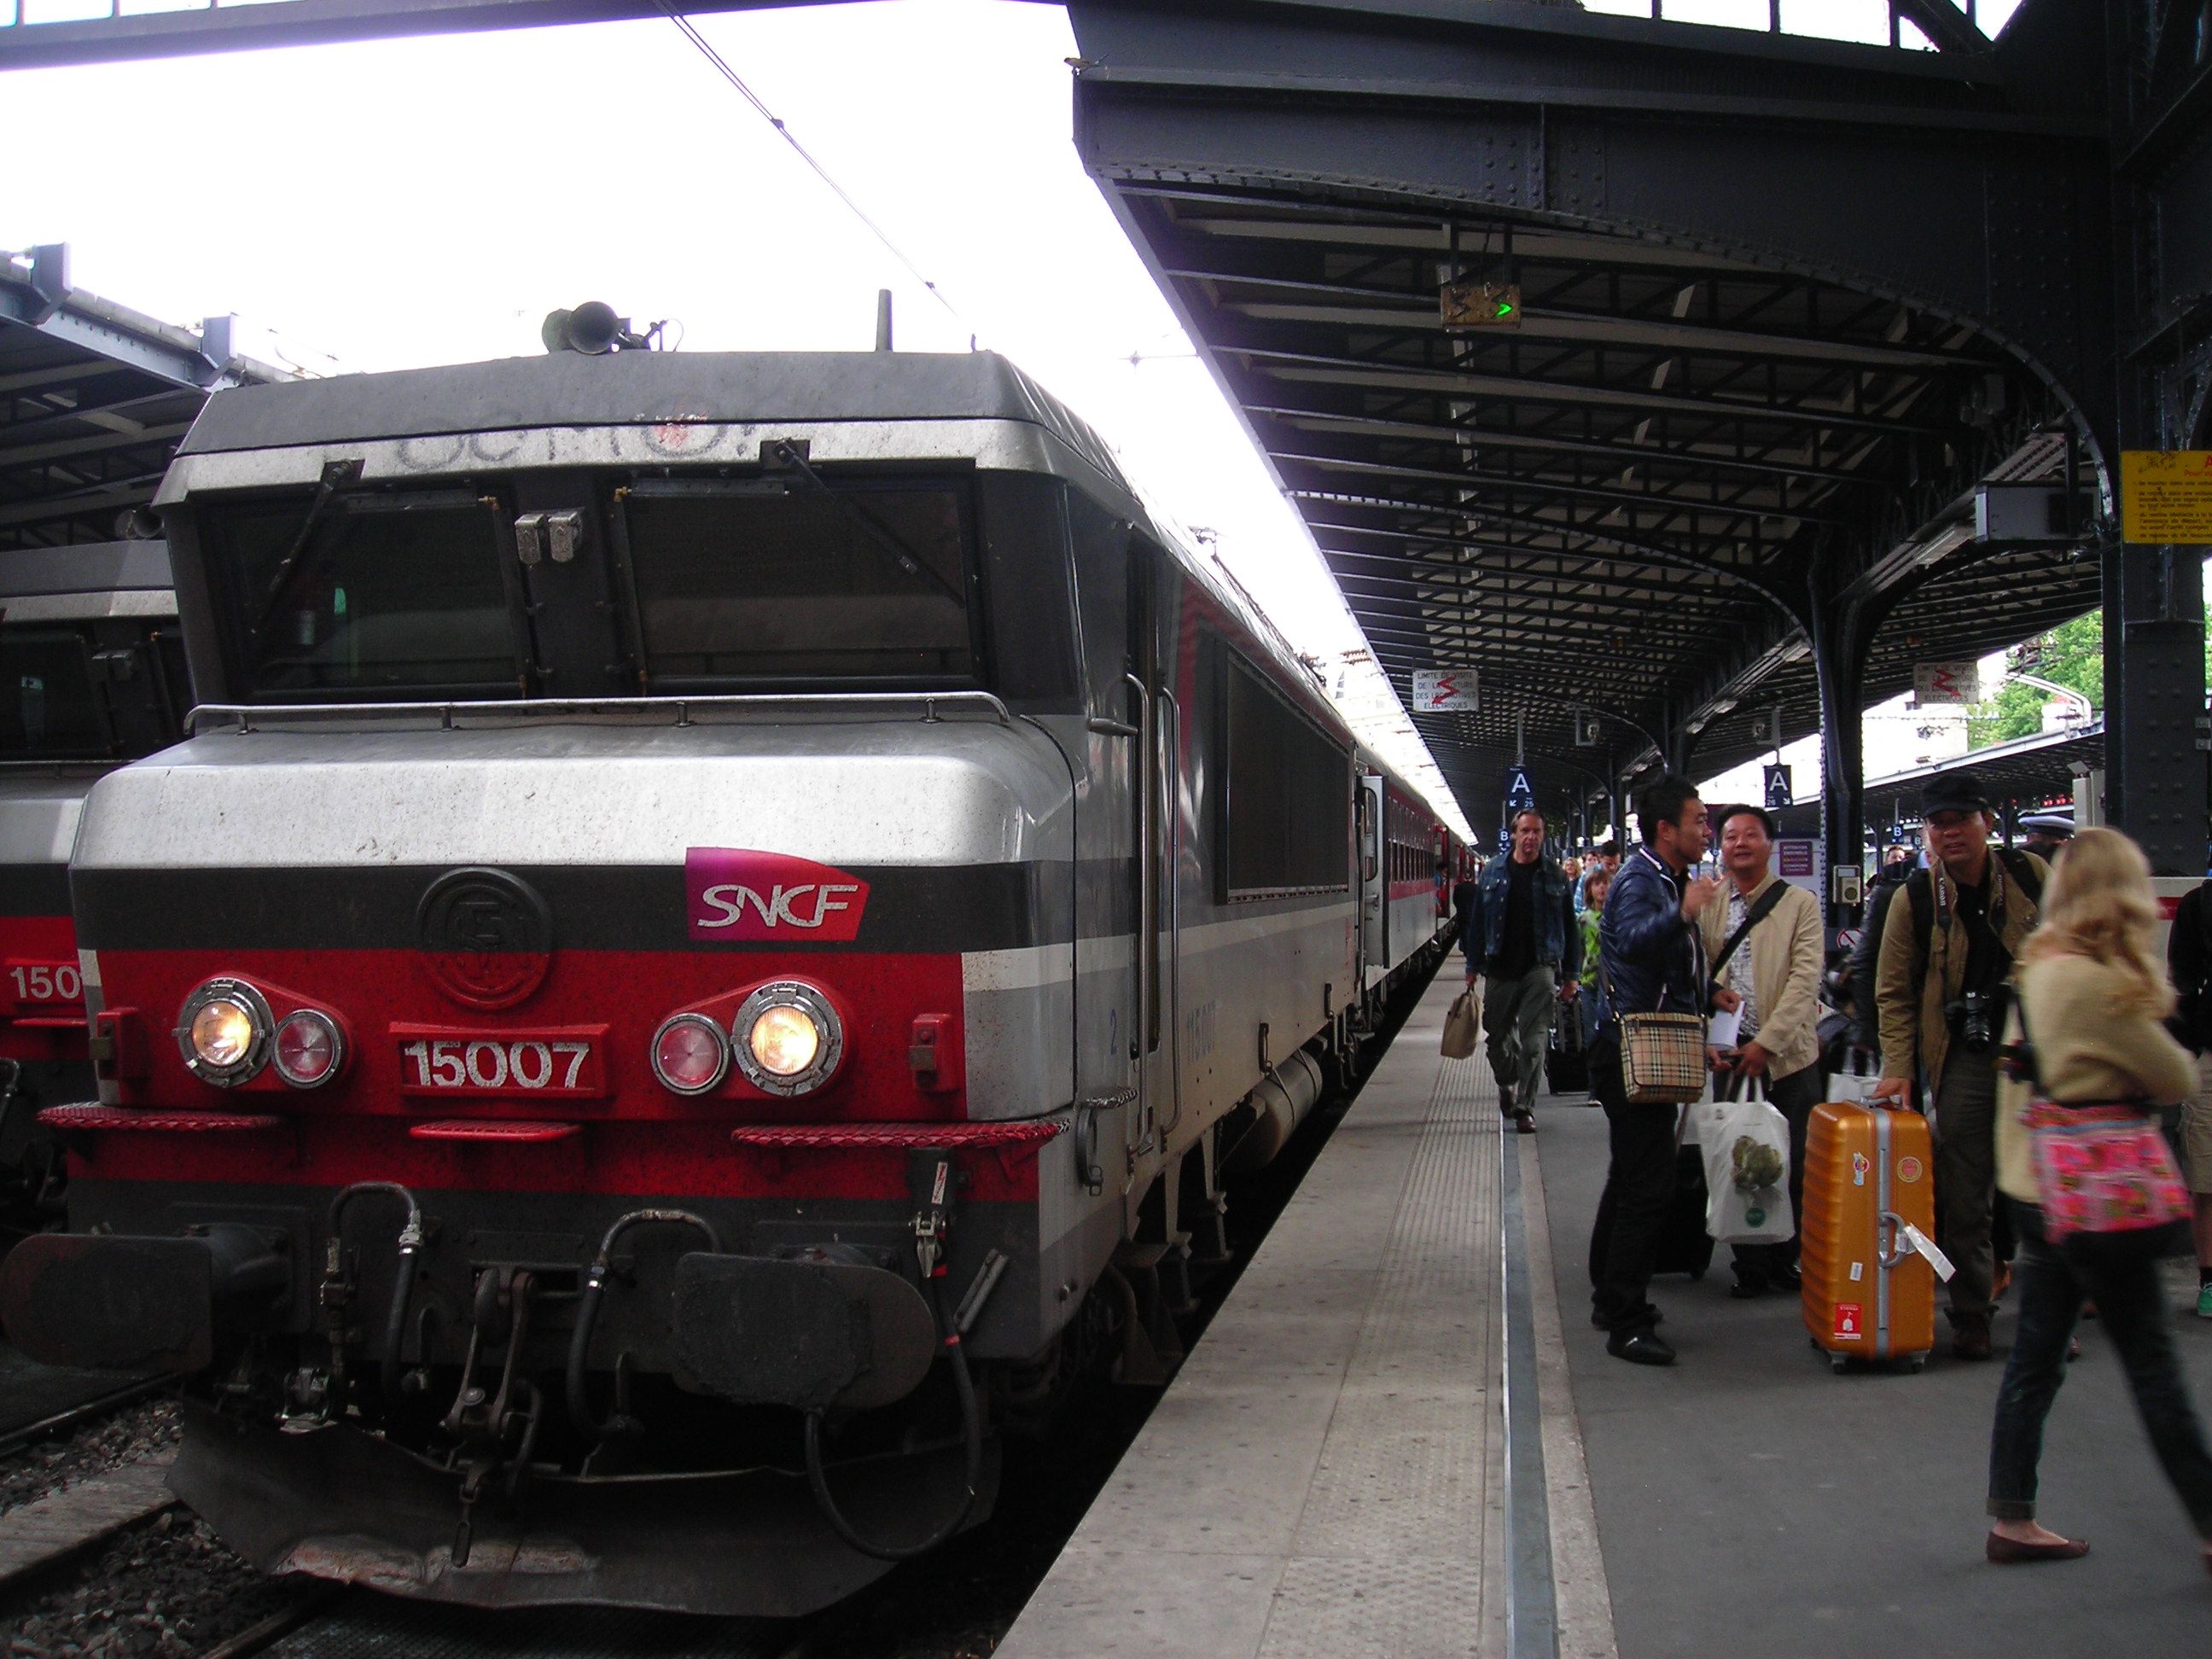 Megérkezés Paris-Est pályaudvarra A mozdonyom út közben le lett cserélve egy BB 15000 sorozatú mozdonyra